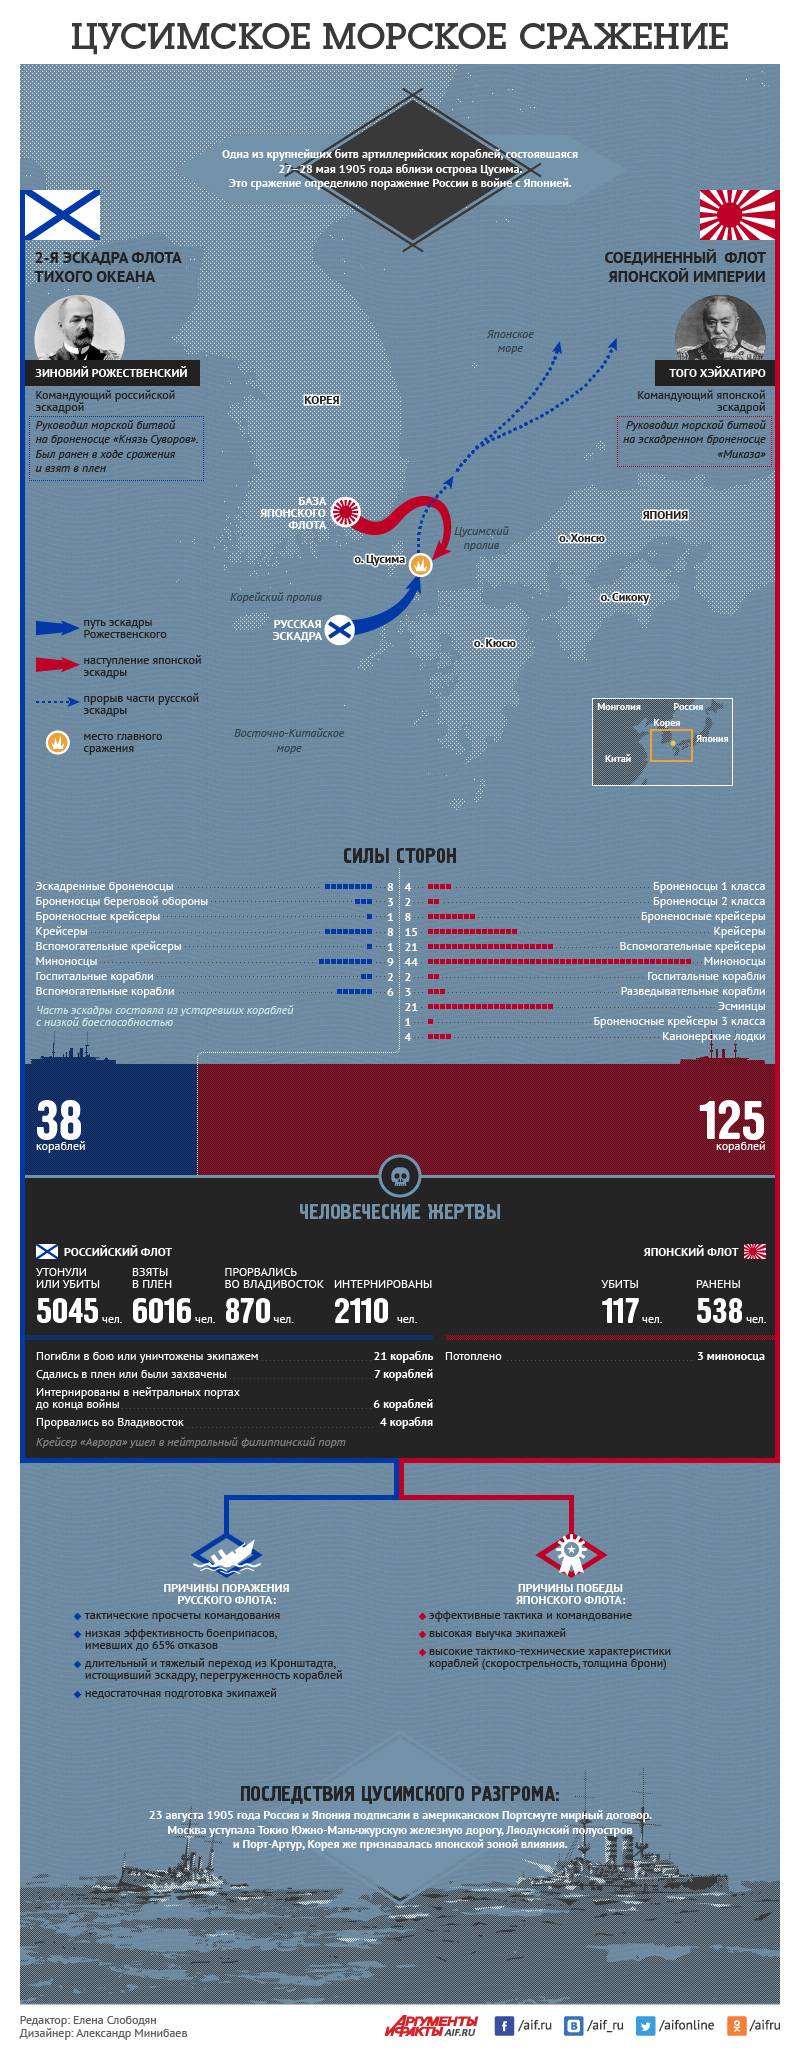 Цусимское морское сражение. Инфографика